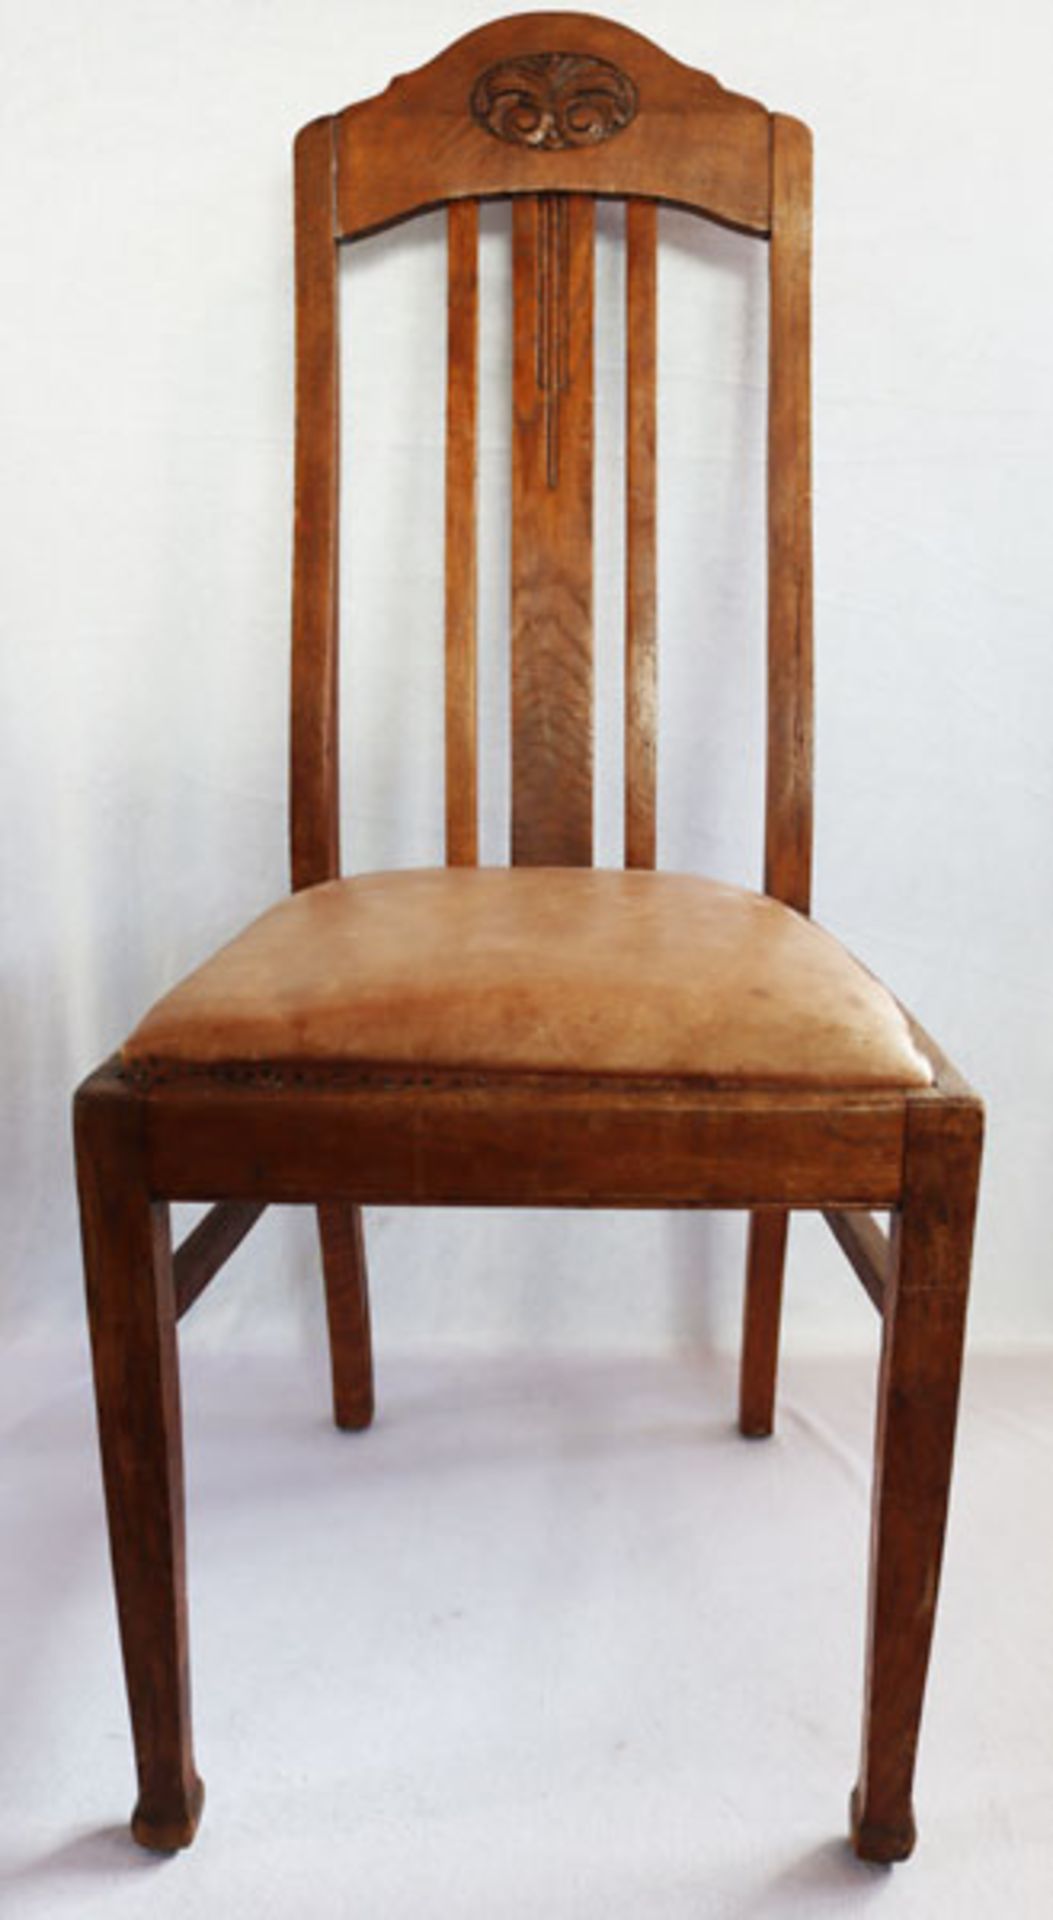 4 Holzstühle, Lehne mit geschnitztem Medaillon, Sitze gepolstert und mit braunem Leder bezogen,